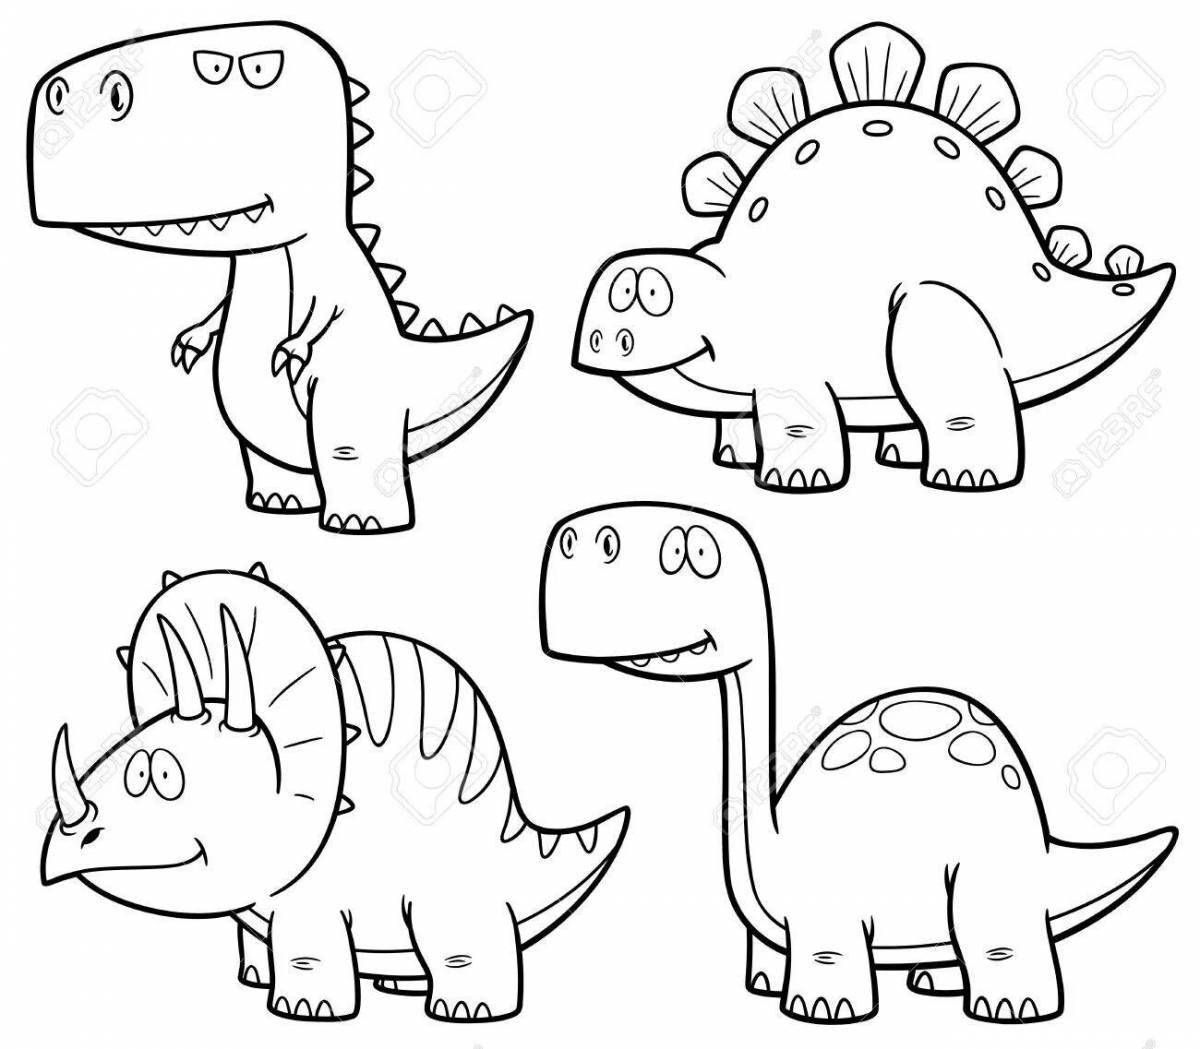 Раскраска дружелюбный милый динозавр